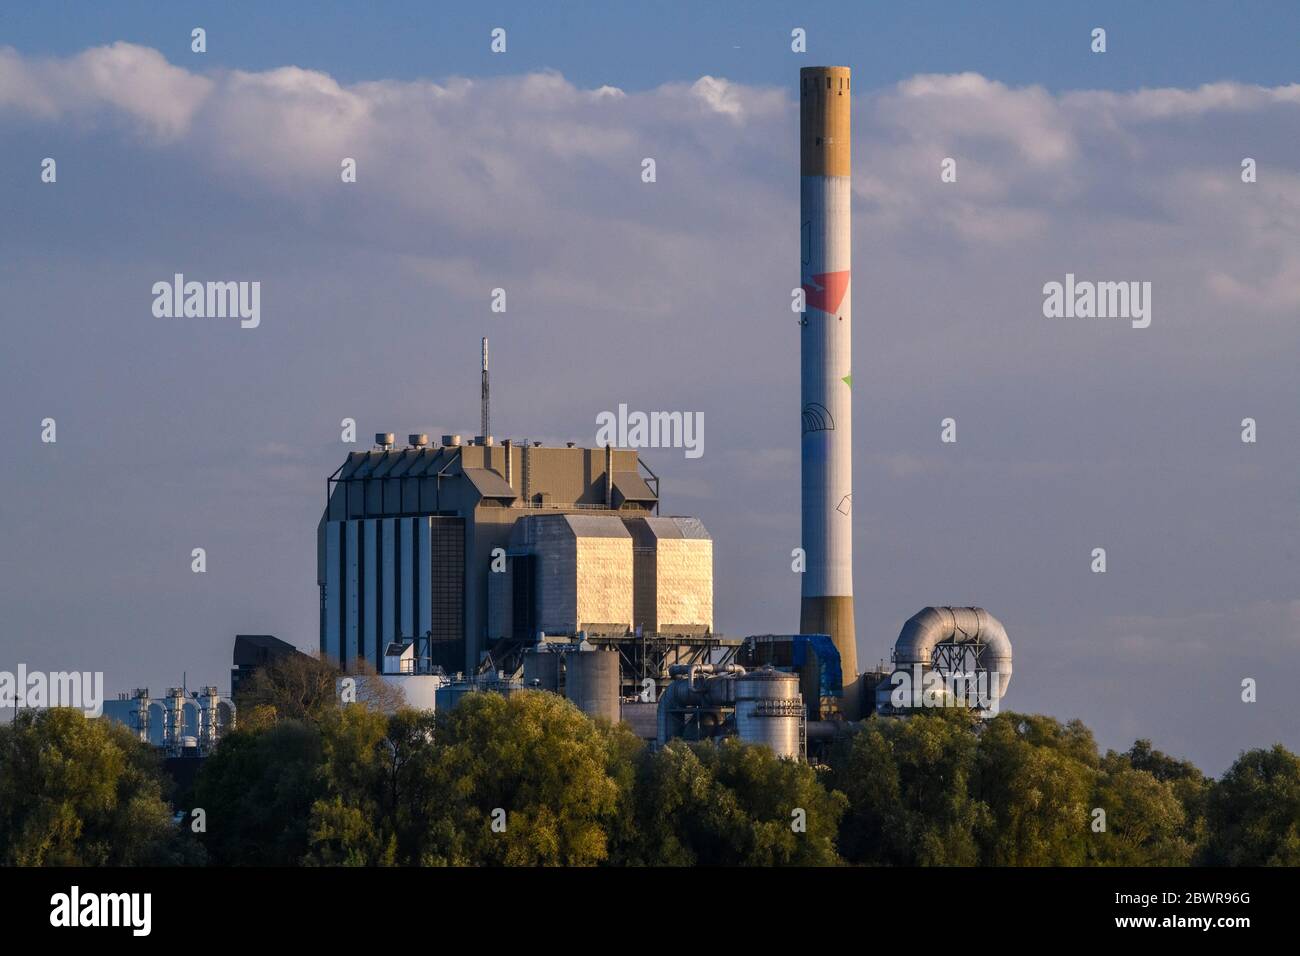 Nijmegen power plant, Nijmegen, Gelderland, Netherlands. Stock Photo